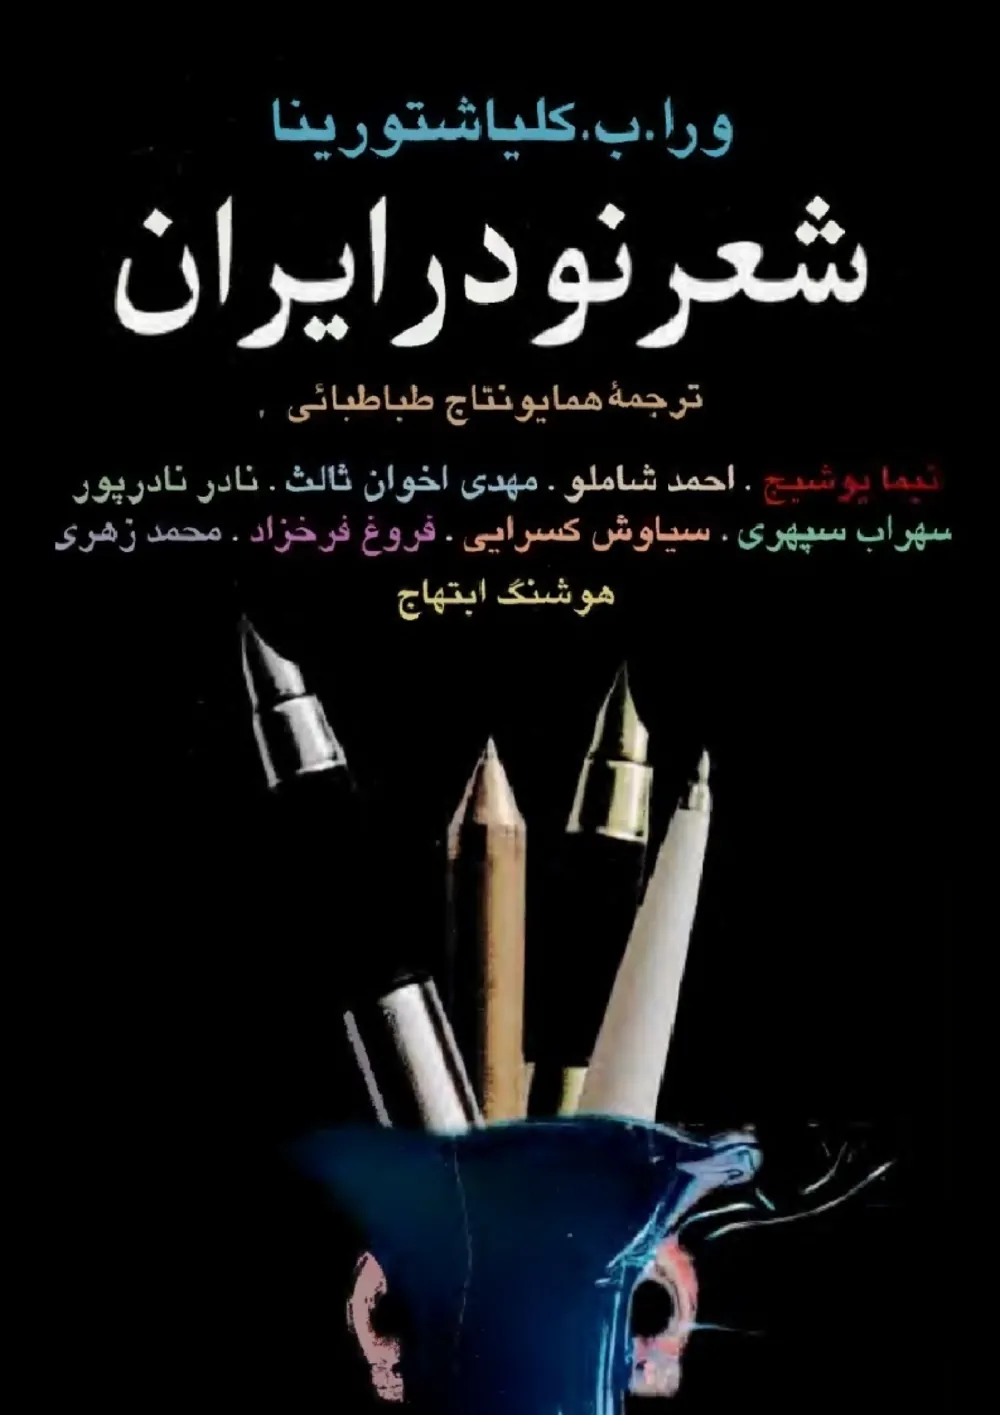 شعر نو در ایران